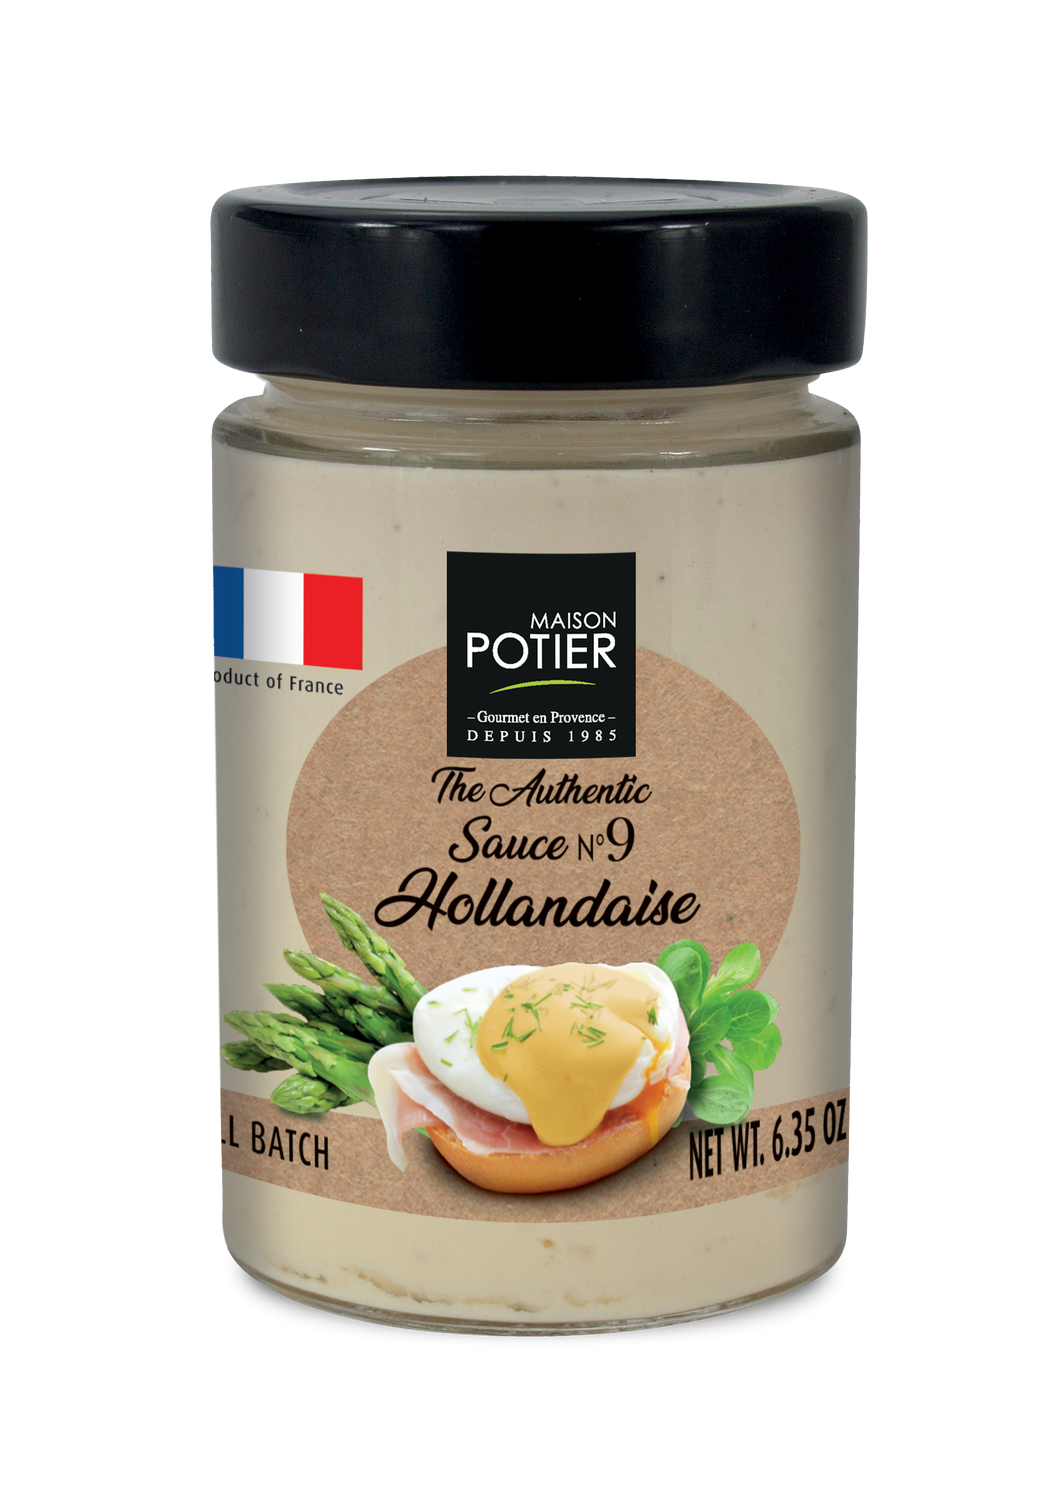 Maison Potier Hollandaise Sauce, The Authentic Sauce N. 9, 6.35oz Jar - International Loft